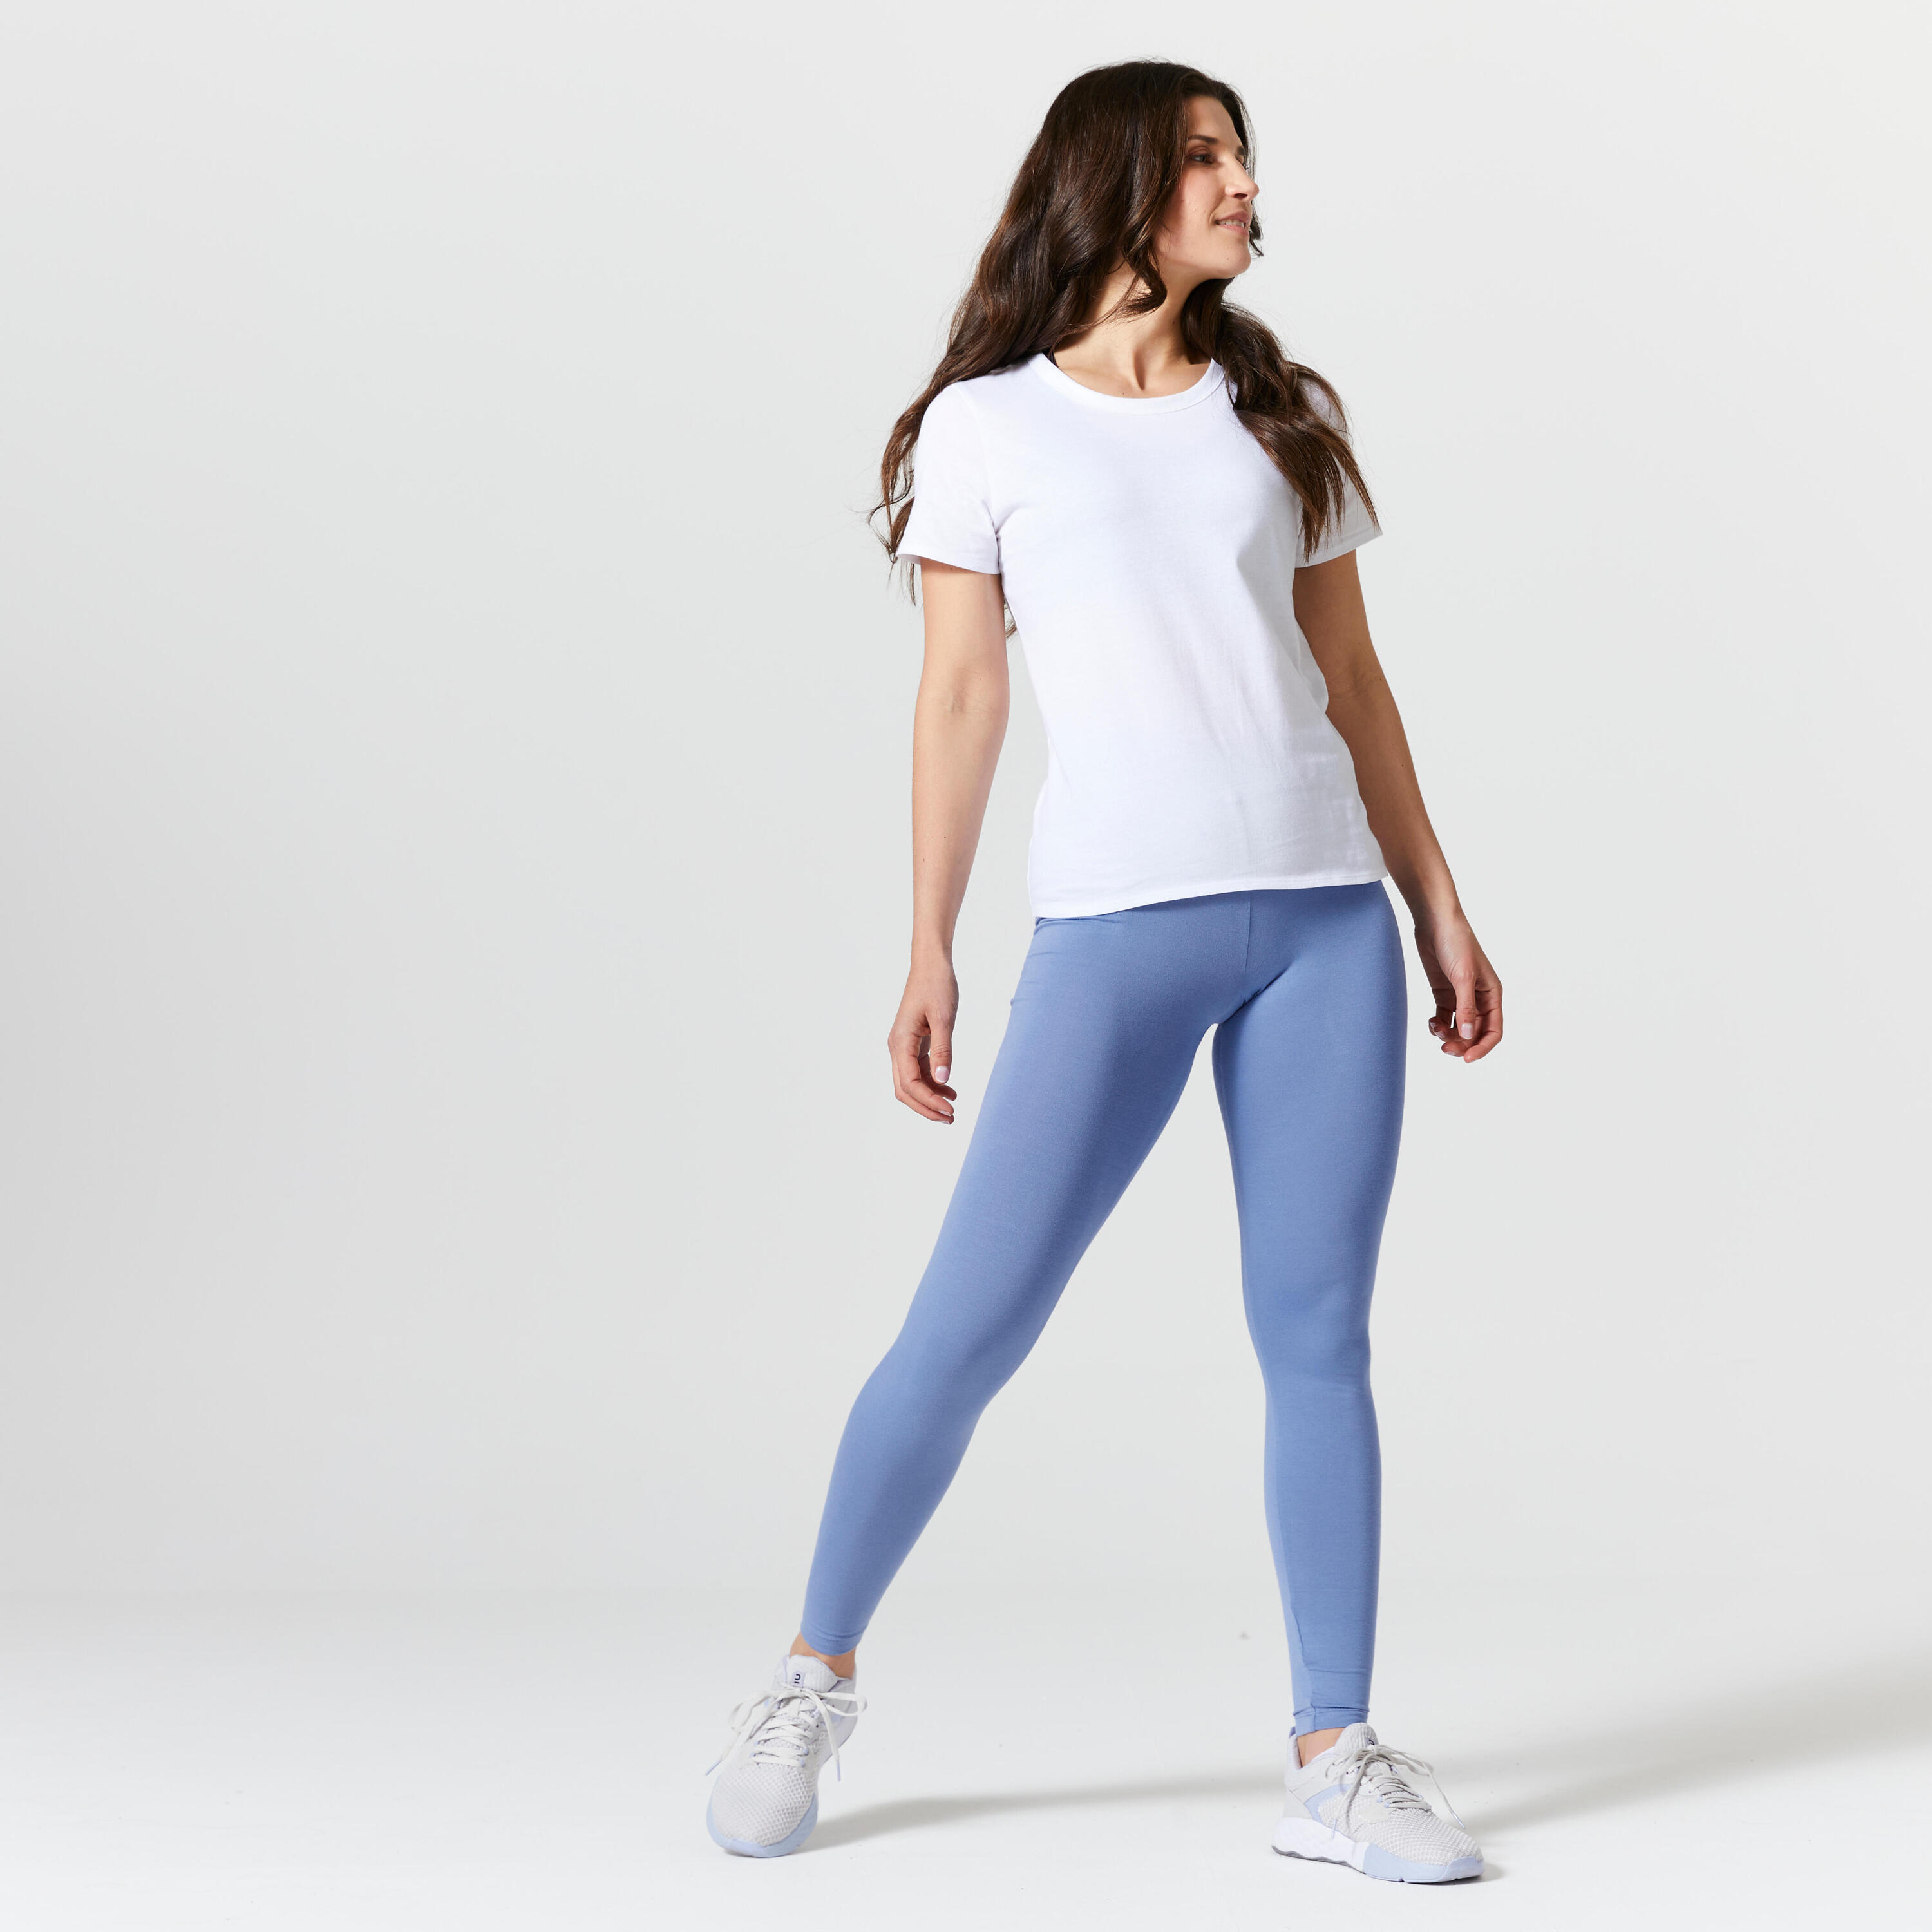 Women's Fitness T-Shirt 100 - Glacier White 2/5